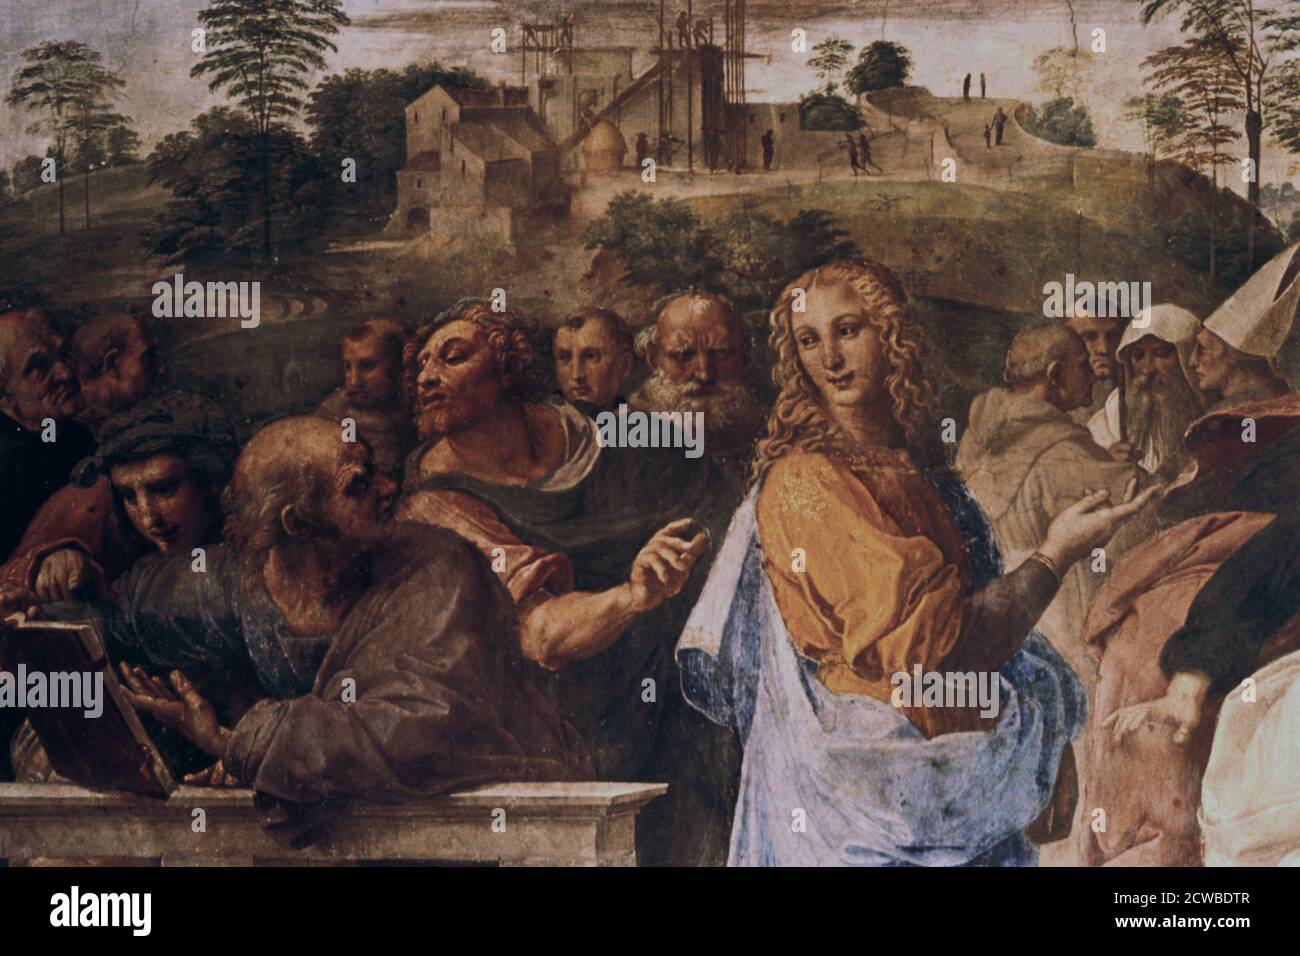 Die Disputation über das Heilige Sakrament ", (Detail), 1508-1509. Künstler: Raphael. Raphael (1483-1520) war ein italienischer Maler und Architekt der Hochrenaissance. Seine Arbeit wird für seine Klarheit der Form, Leichtigkeit der Komposition und visuelle Leistung der menschlichen Größe bewundert. Stockfoto